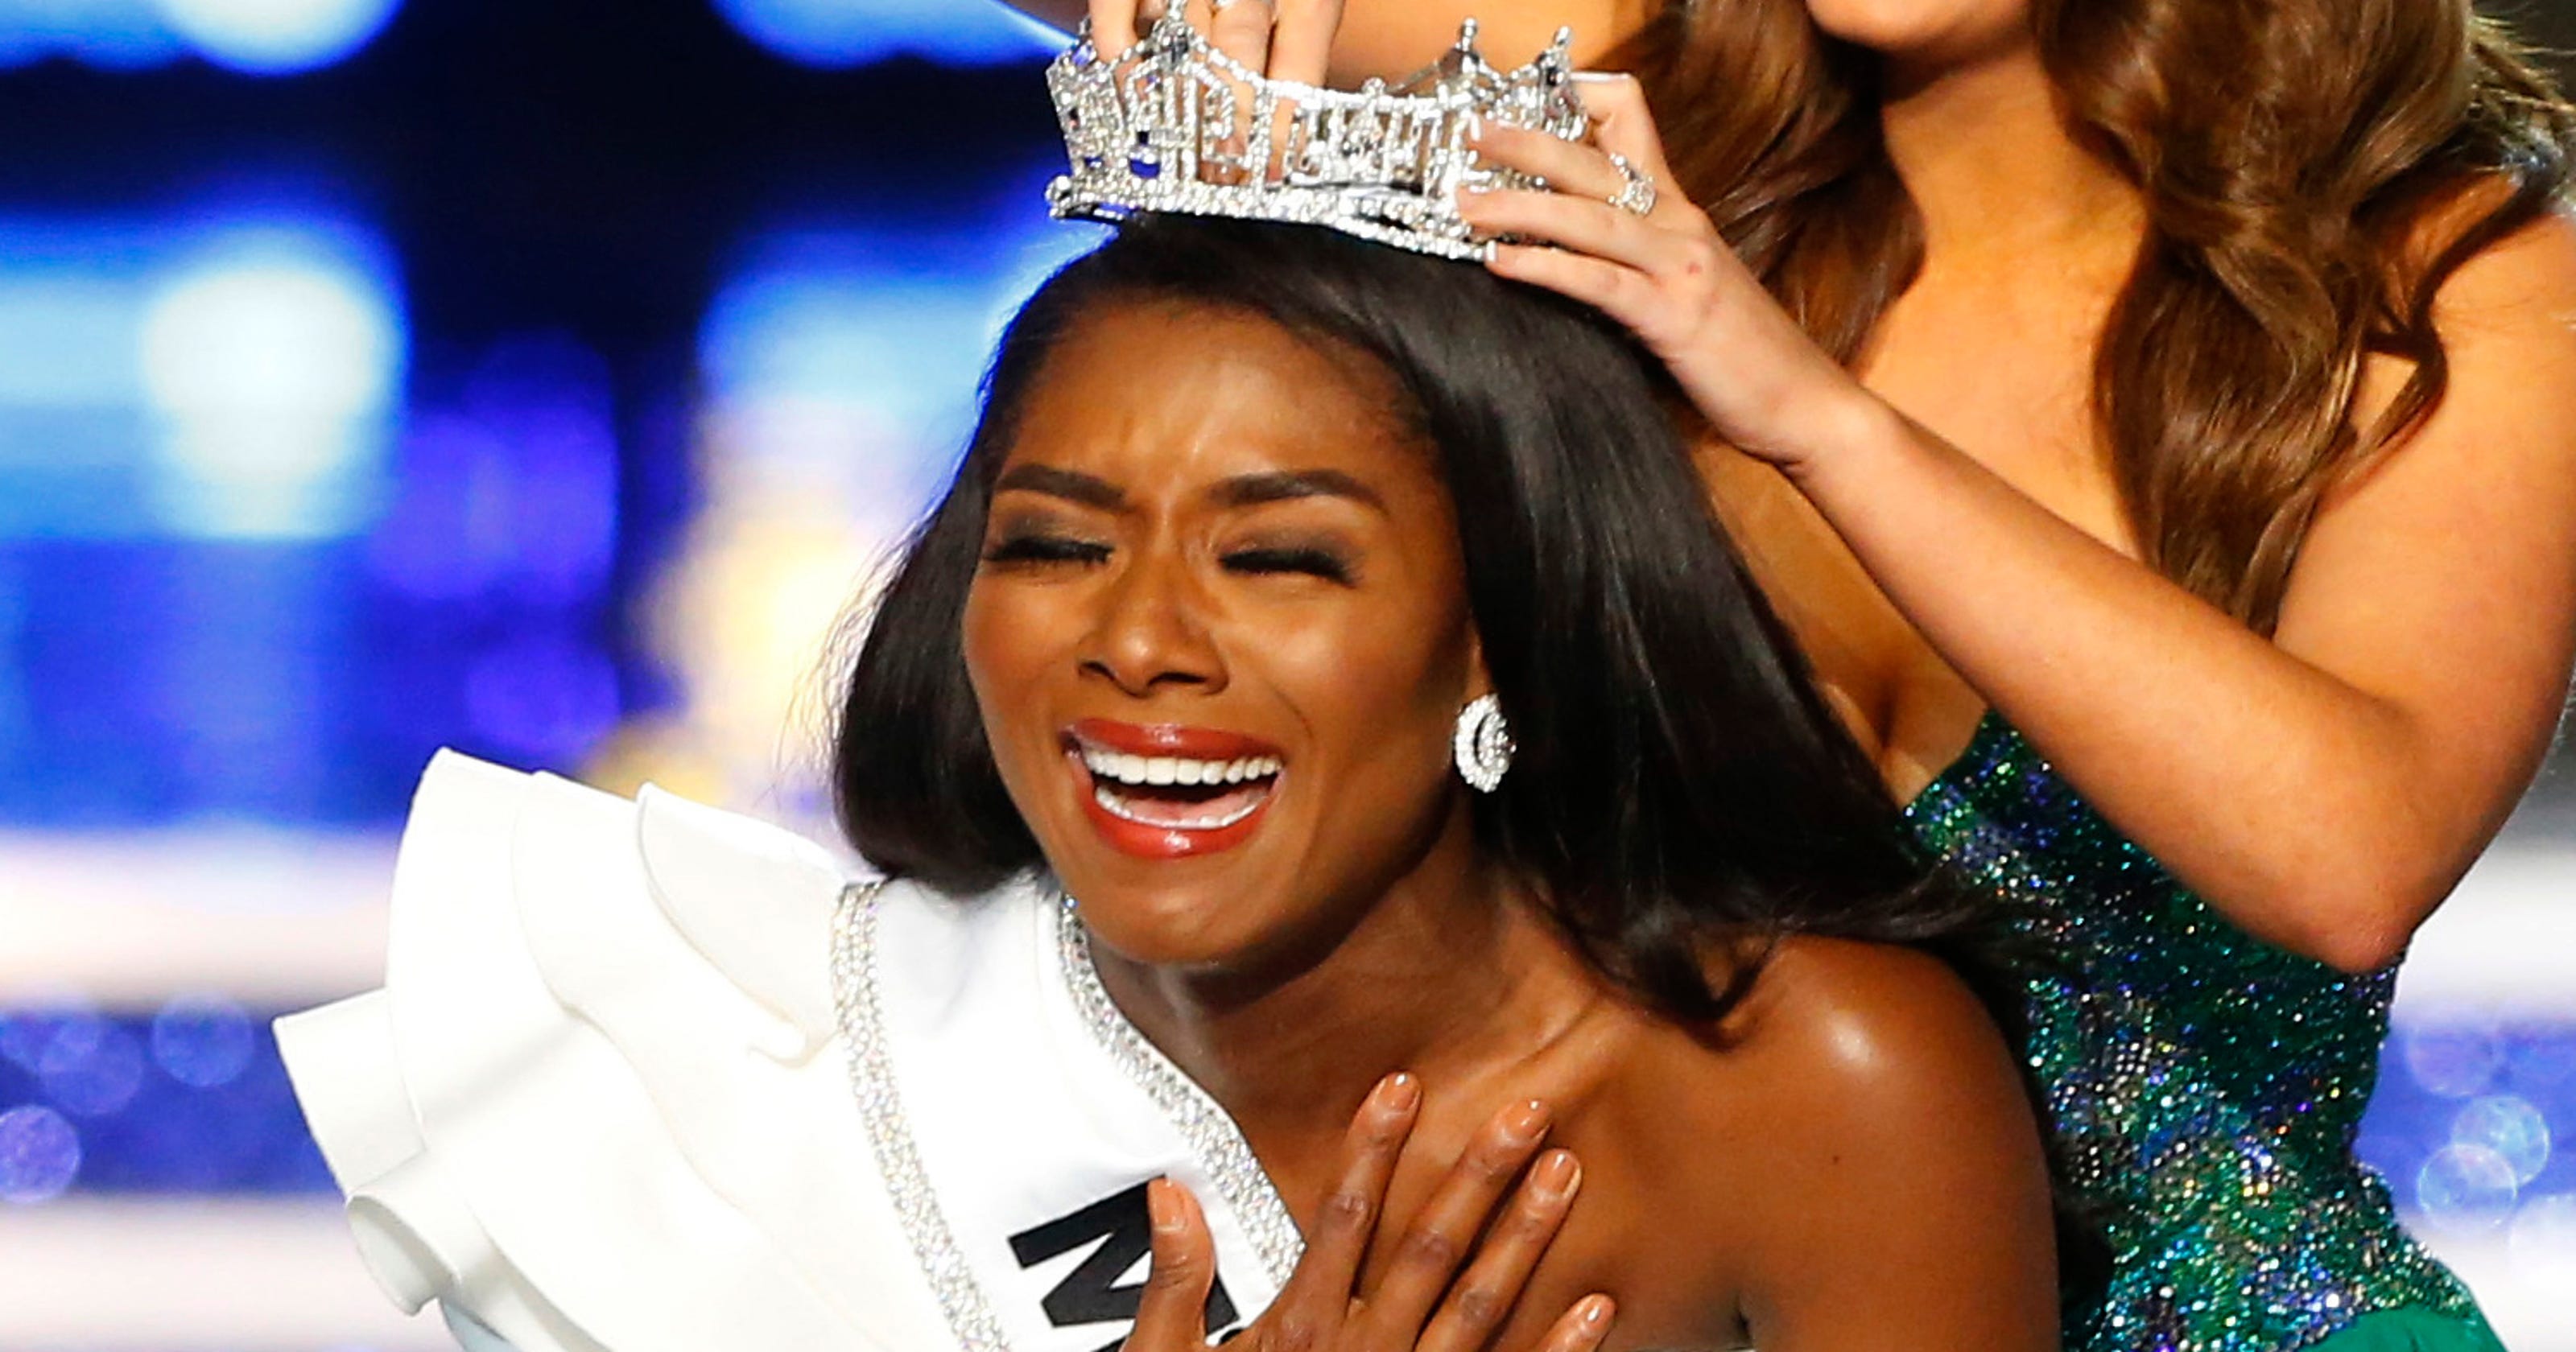 Miss America 2019 winner: Miss New York Nia Franklin is crowned